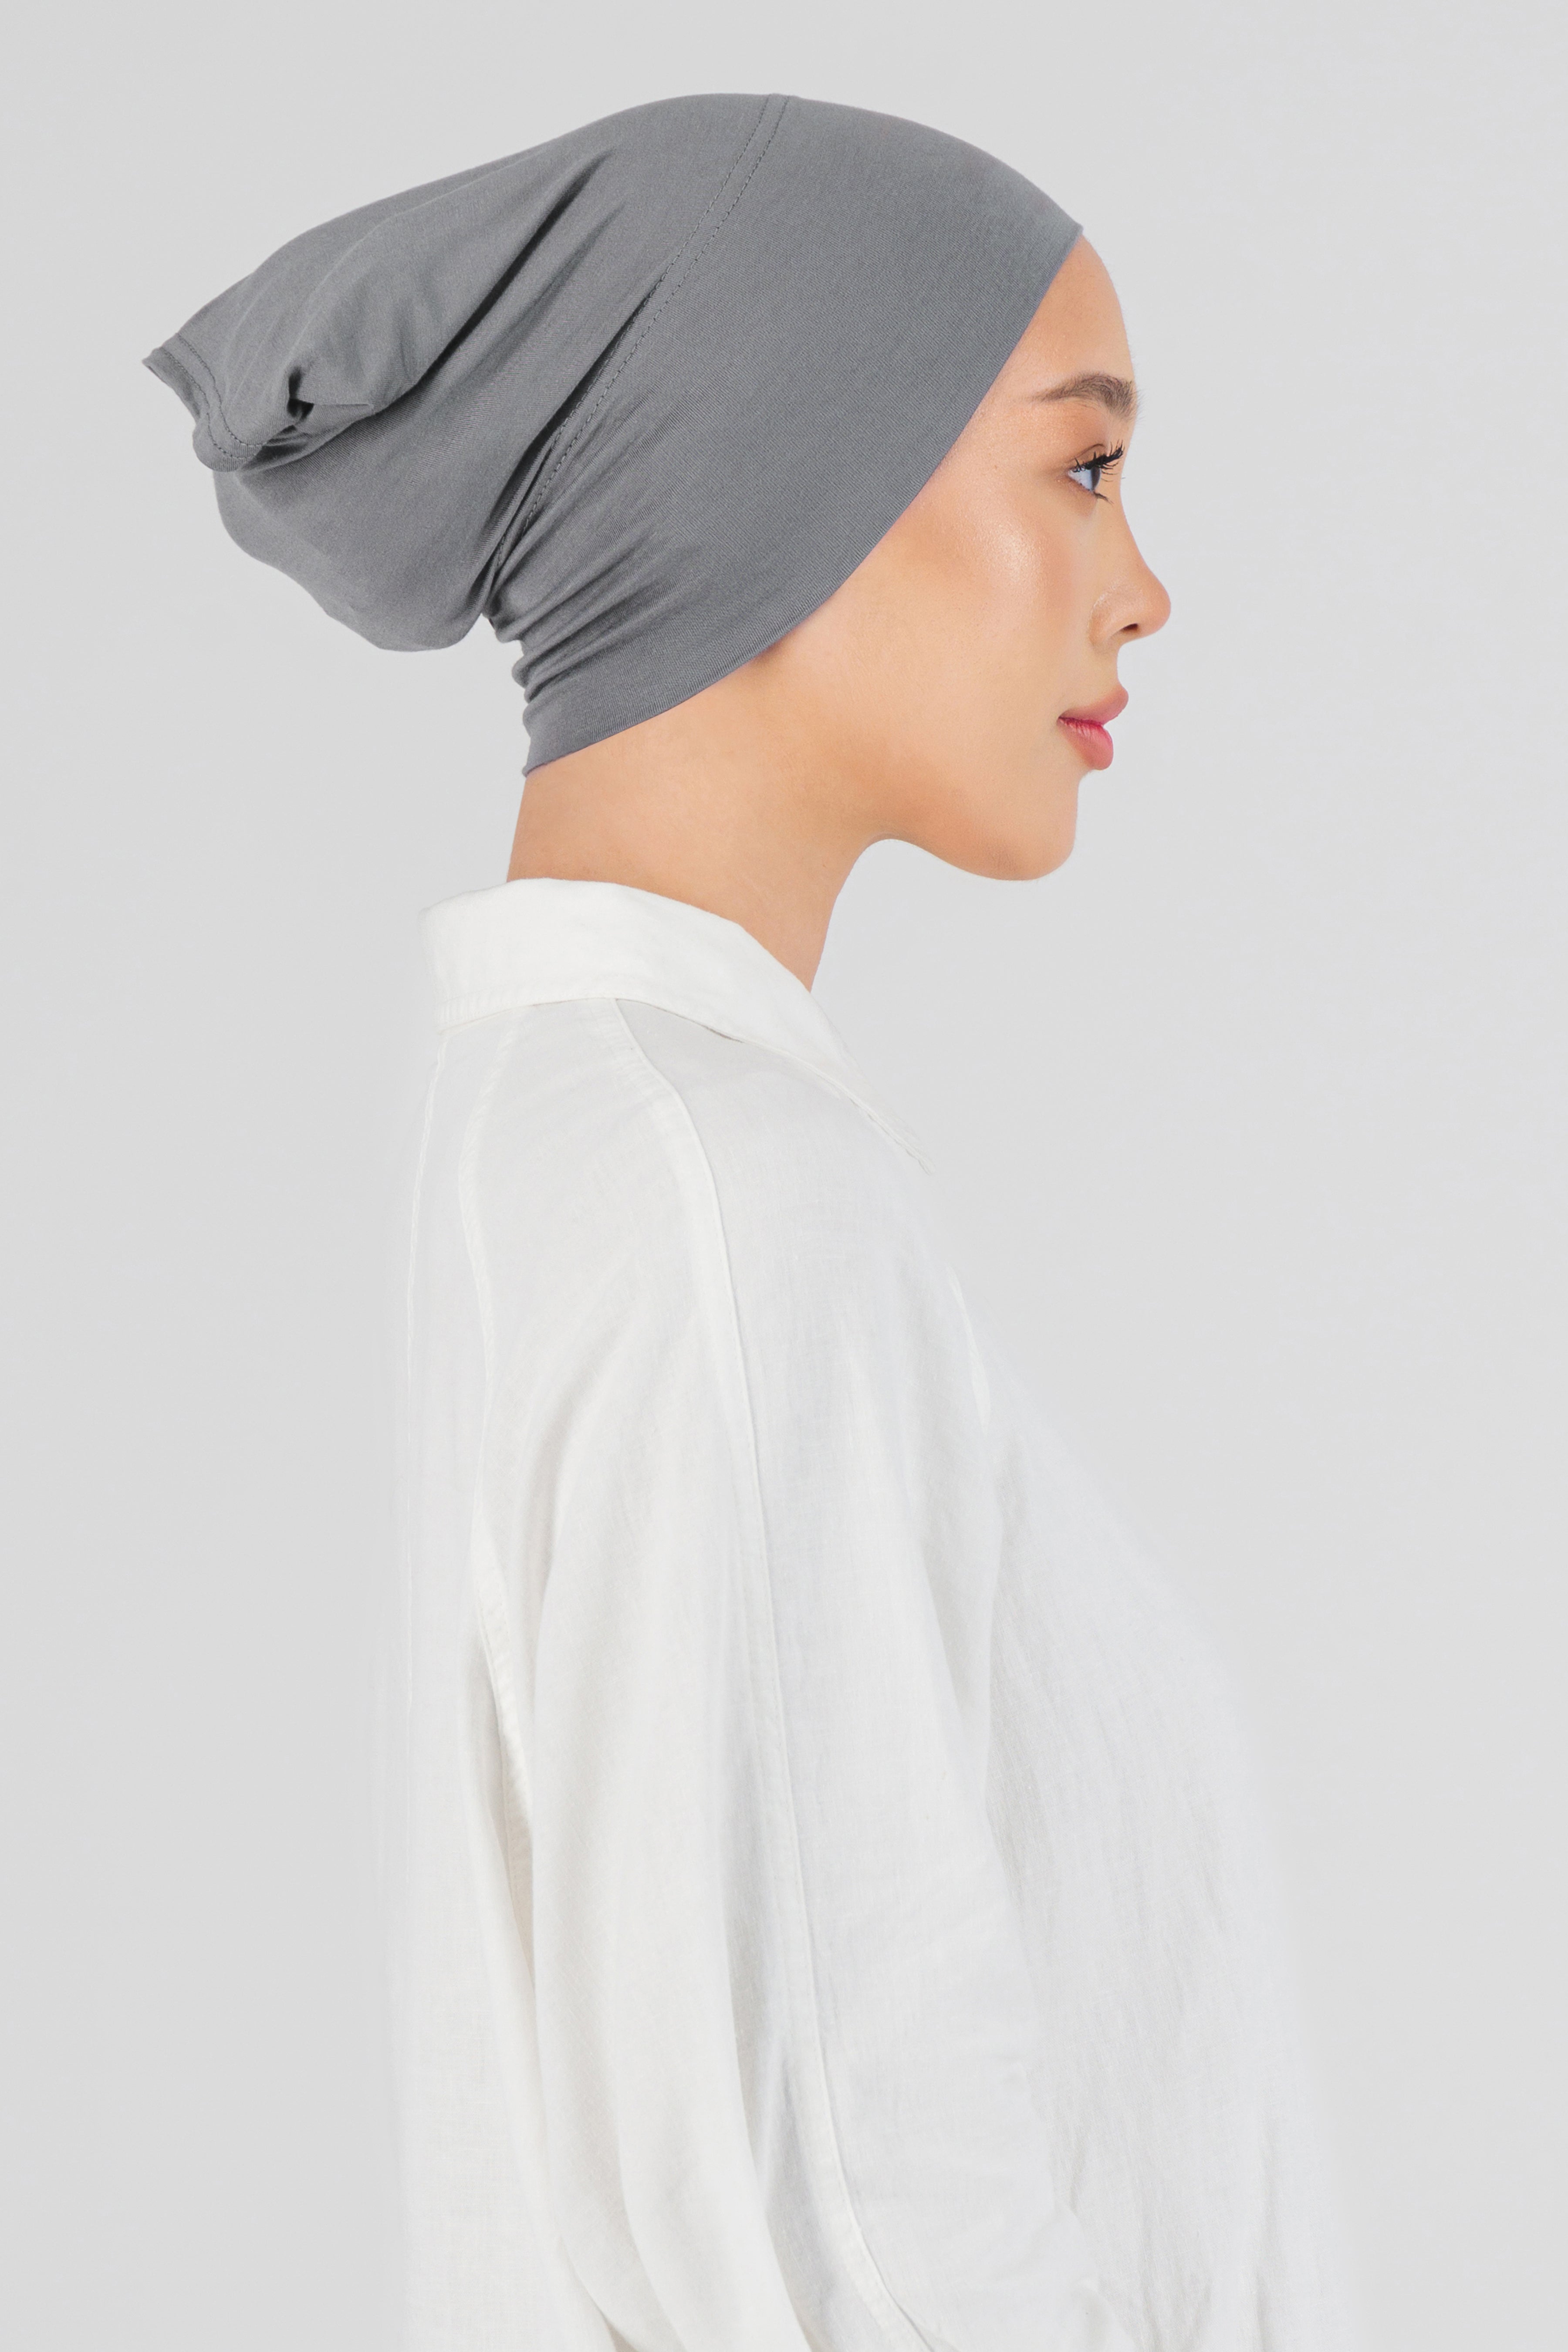 AE - Matching Chiffon Hijab Set - Steel